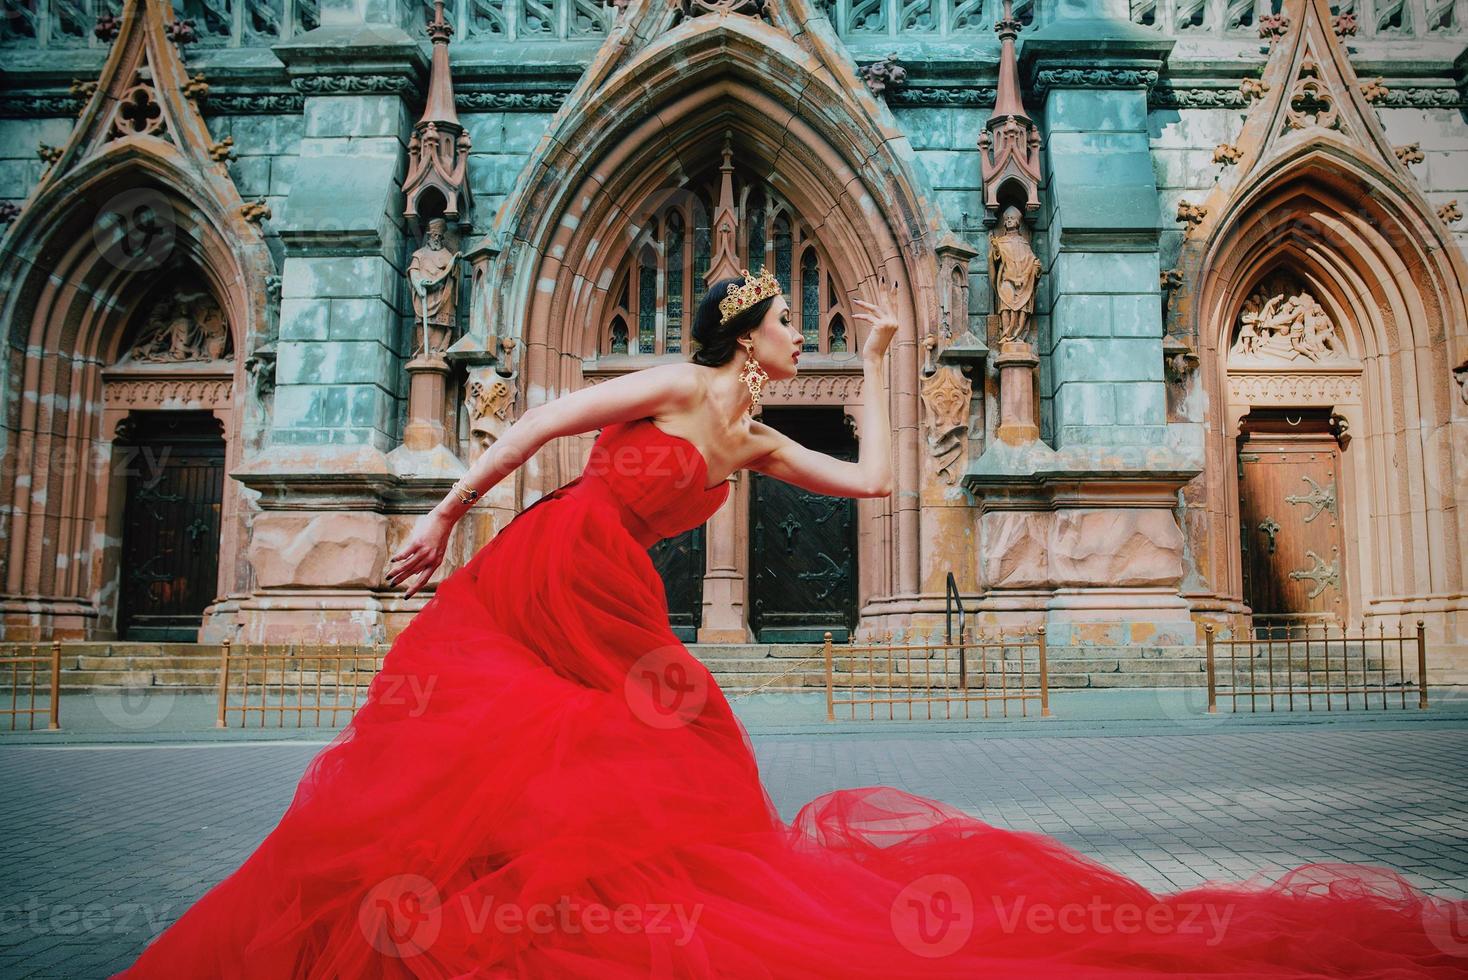 bella mujer con vestido rojo largo y corona real casi catedral católica foto